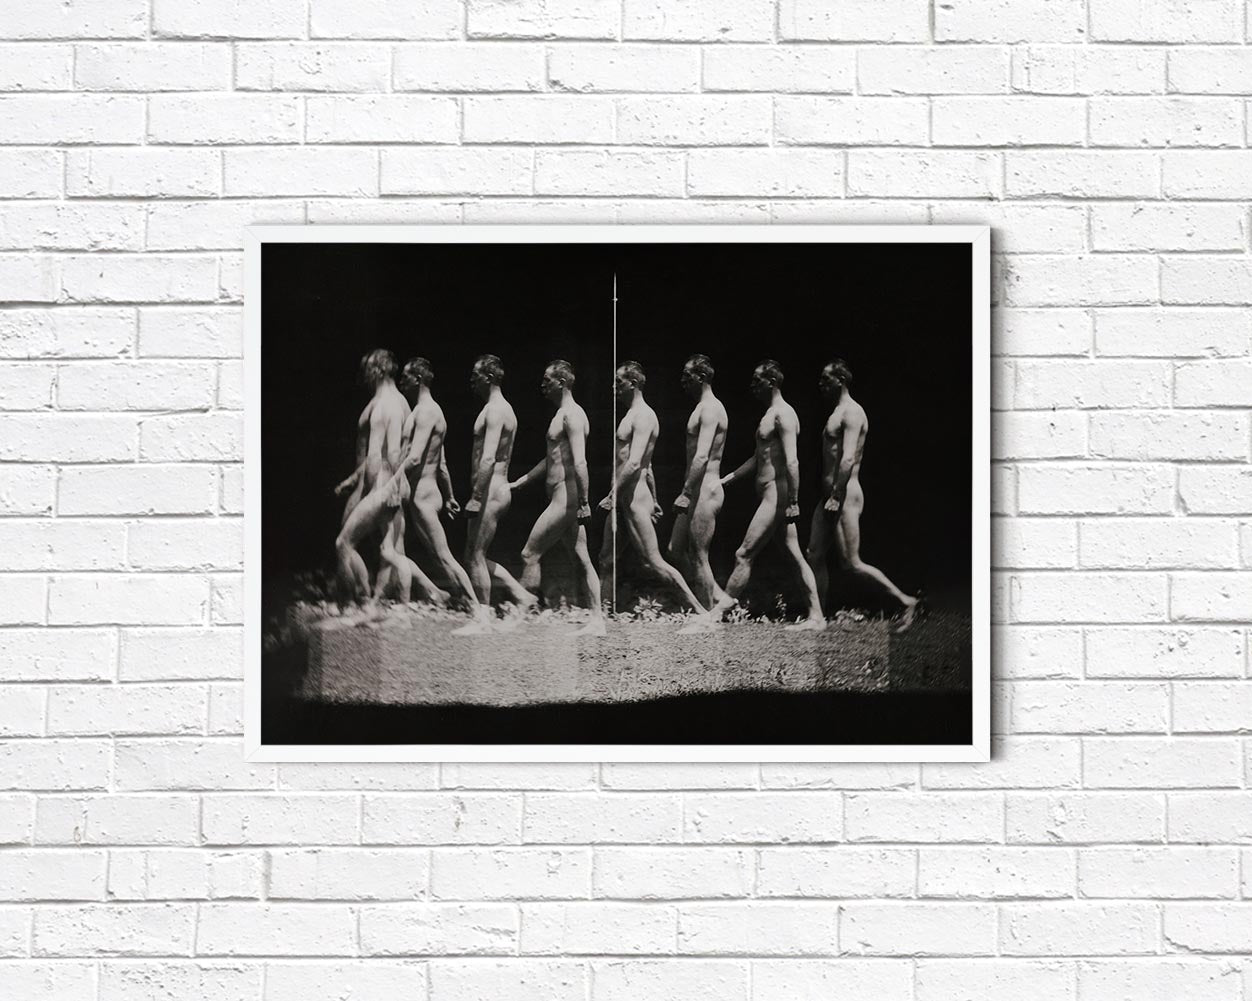 Naked Man Walking by Thomas Eakins